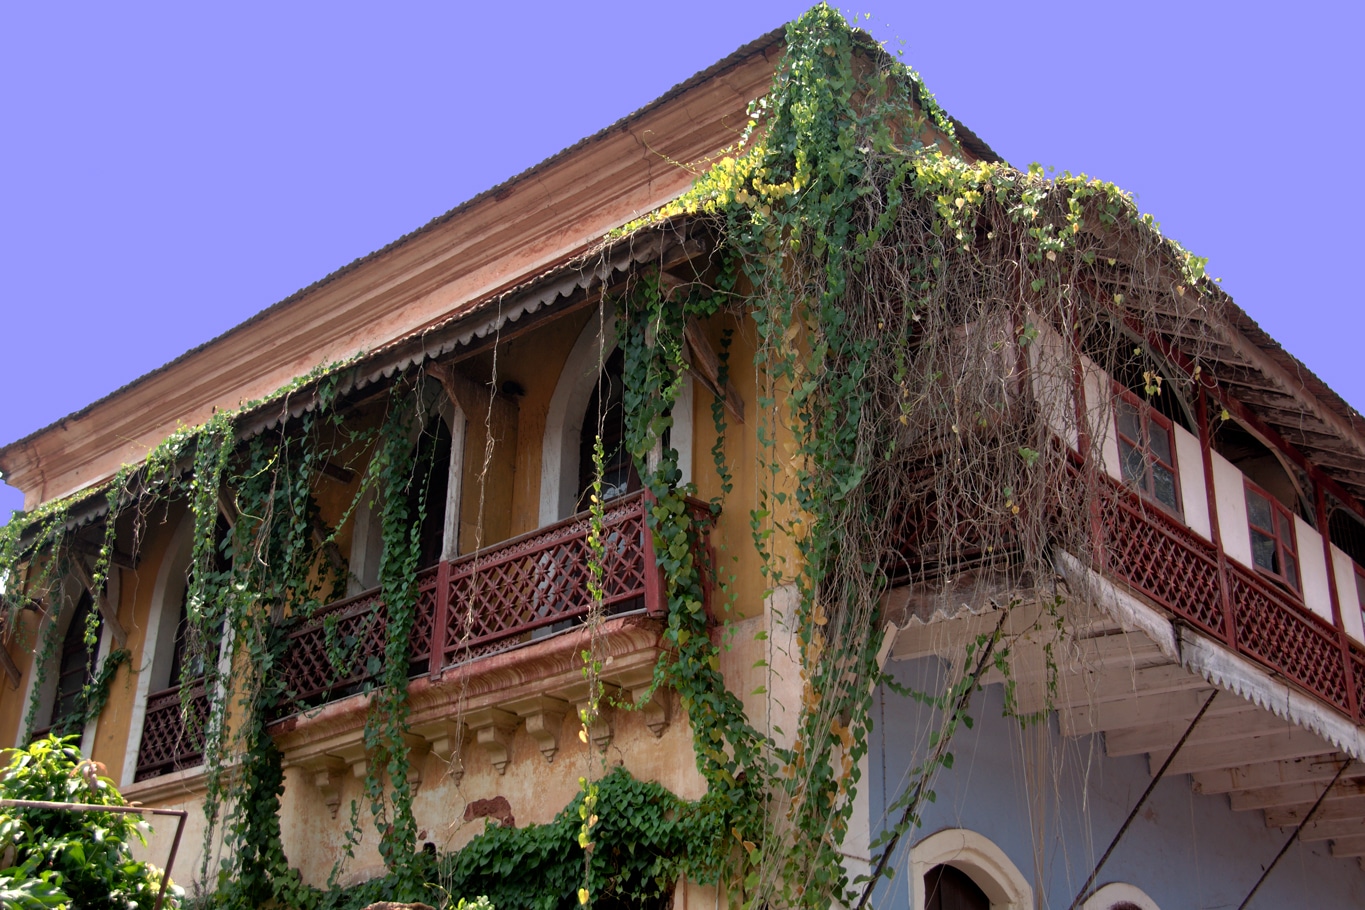 Maison coloniale typique de Panaji à Goa - Lors de mes voyages en Inde